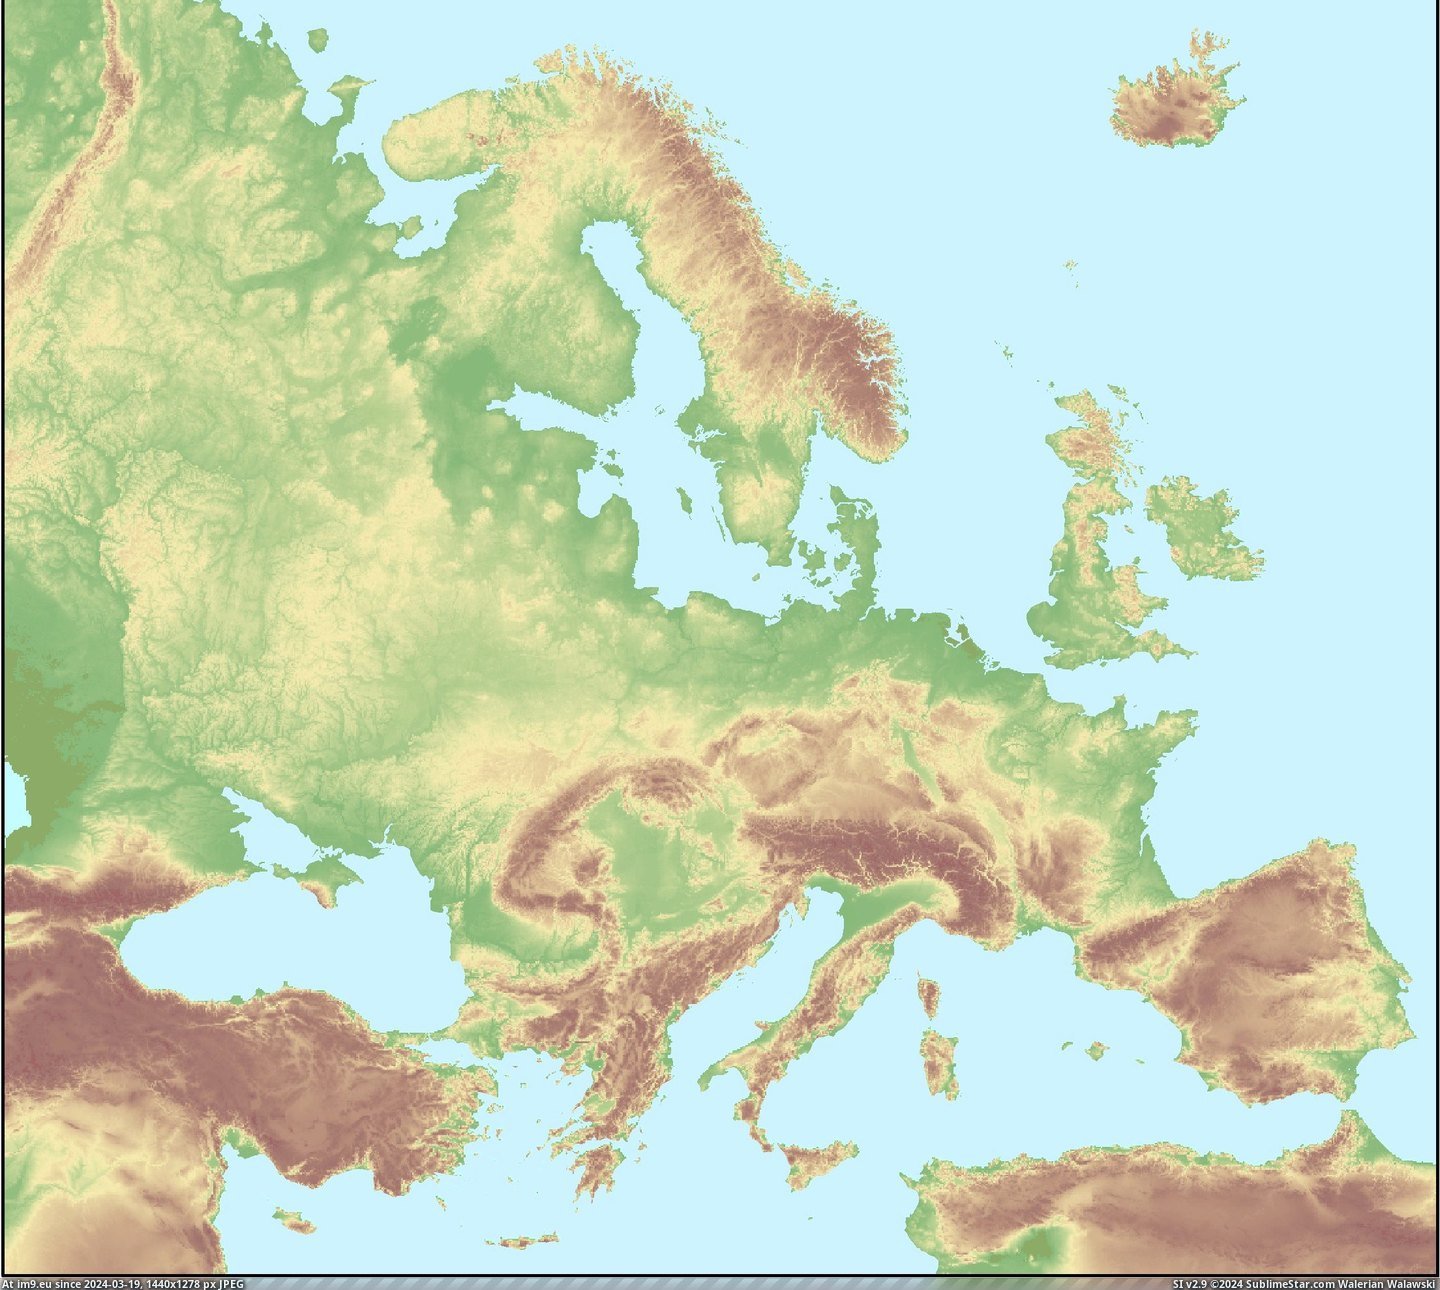  #Europe  [Mapporn] Europe backwards [2,208x1,971] Pic. (Bild von album My r/MAPS favs))